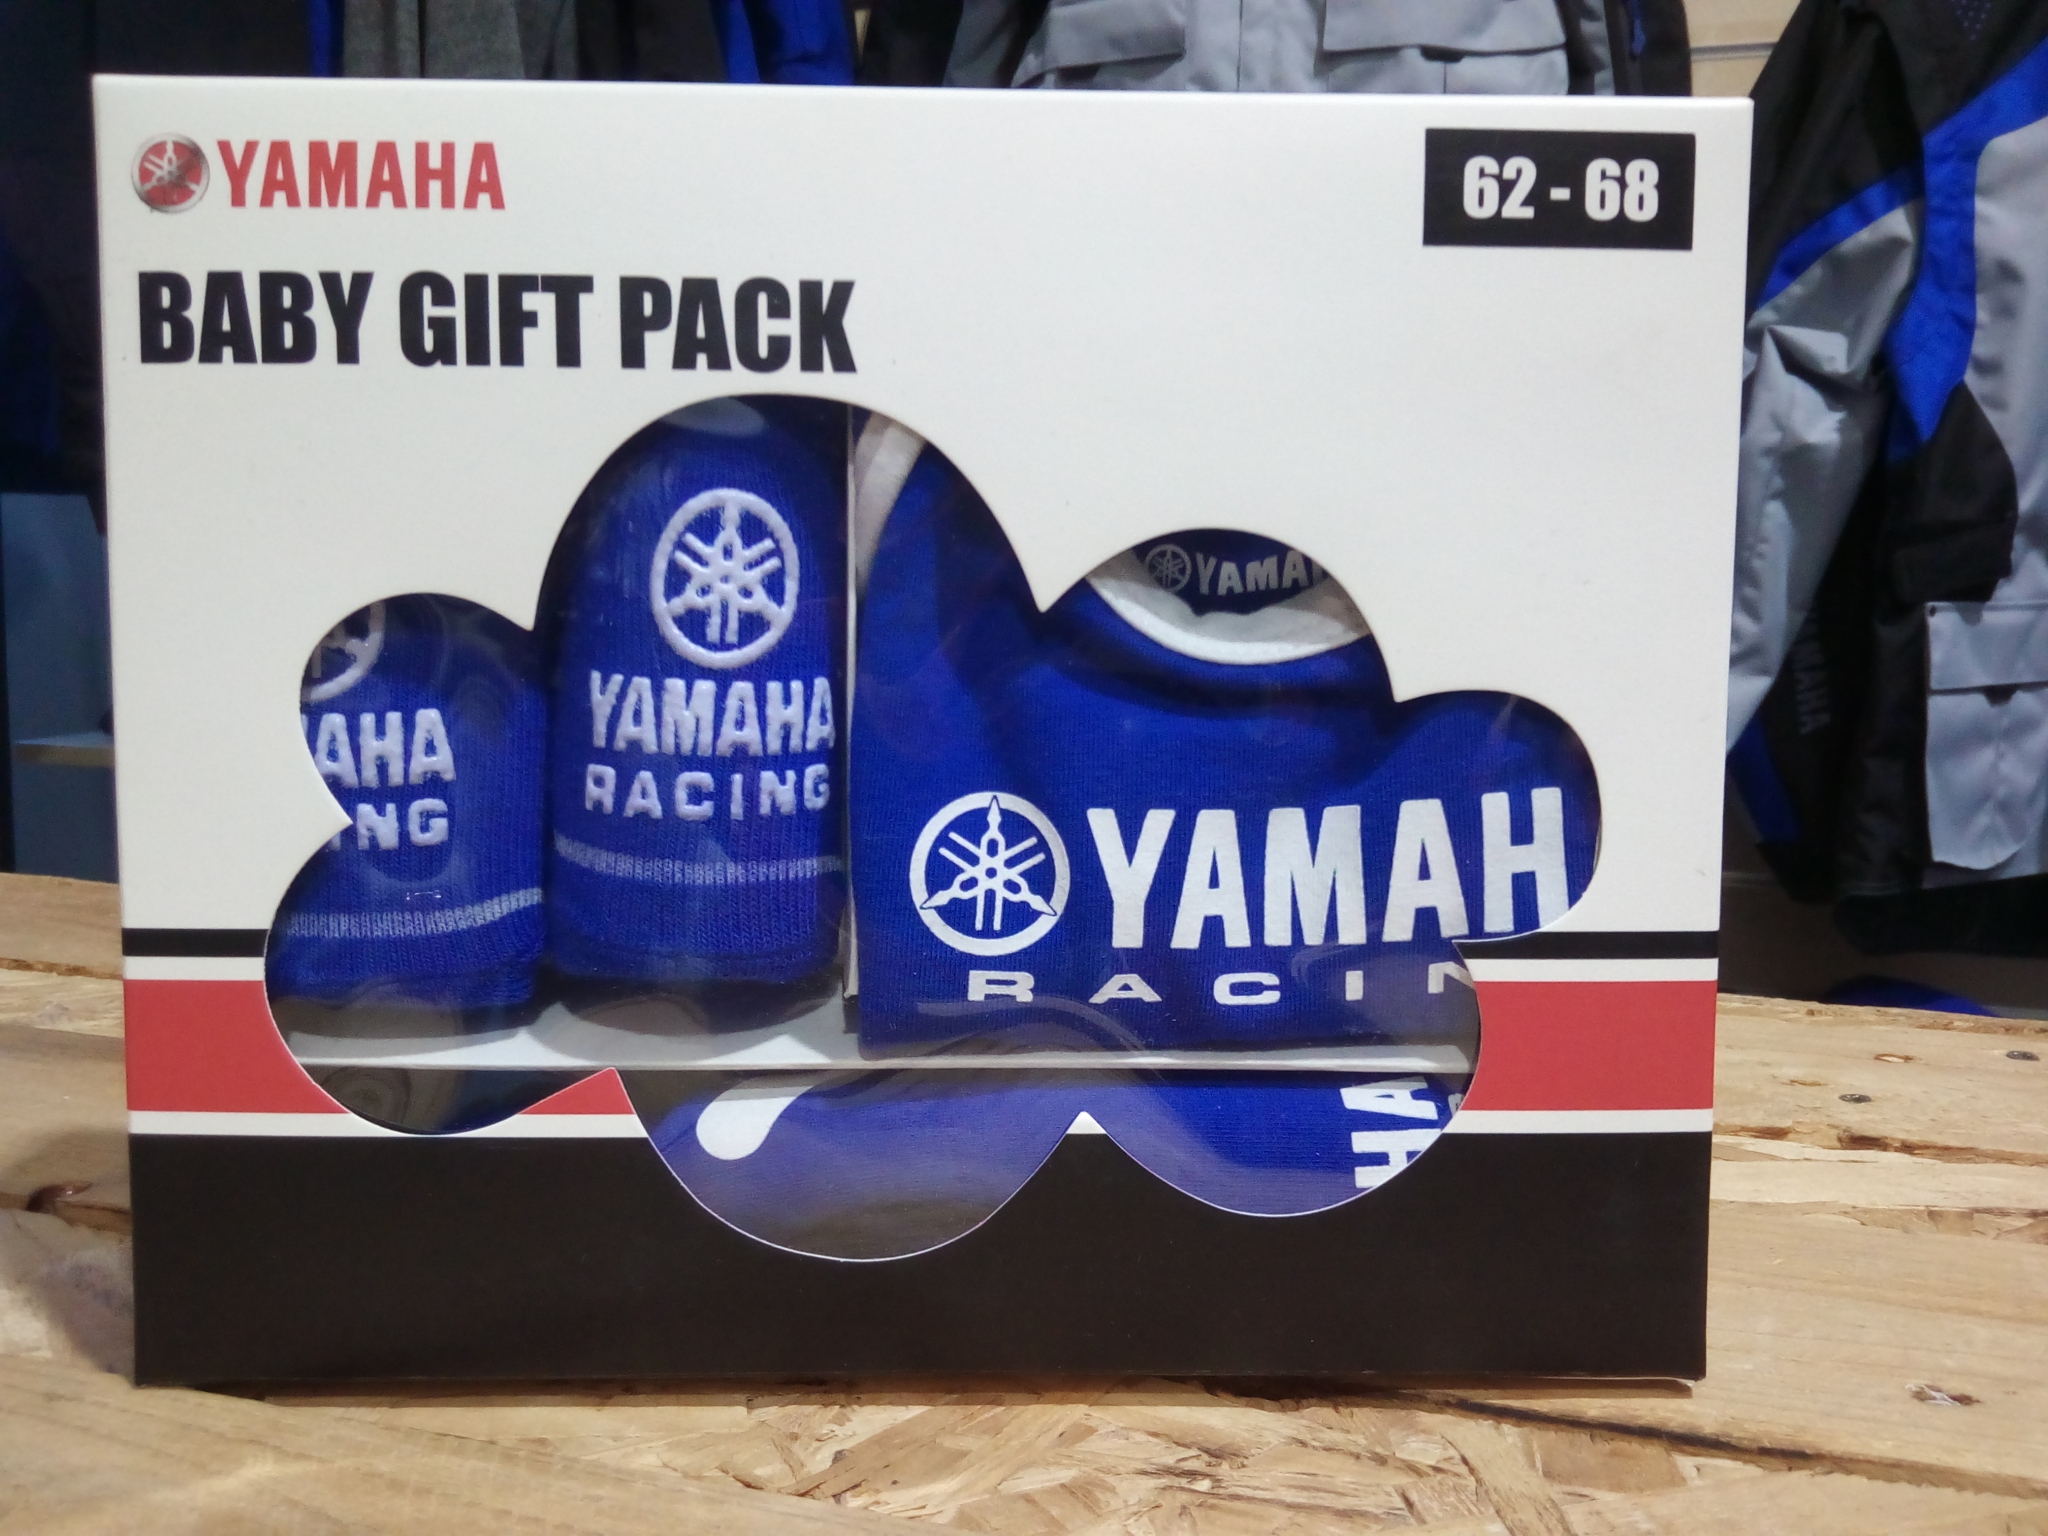  - Original Yamaha Bekleidung und Merchandise 3